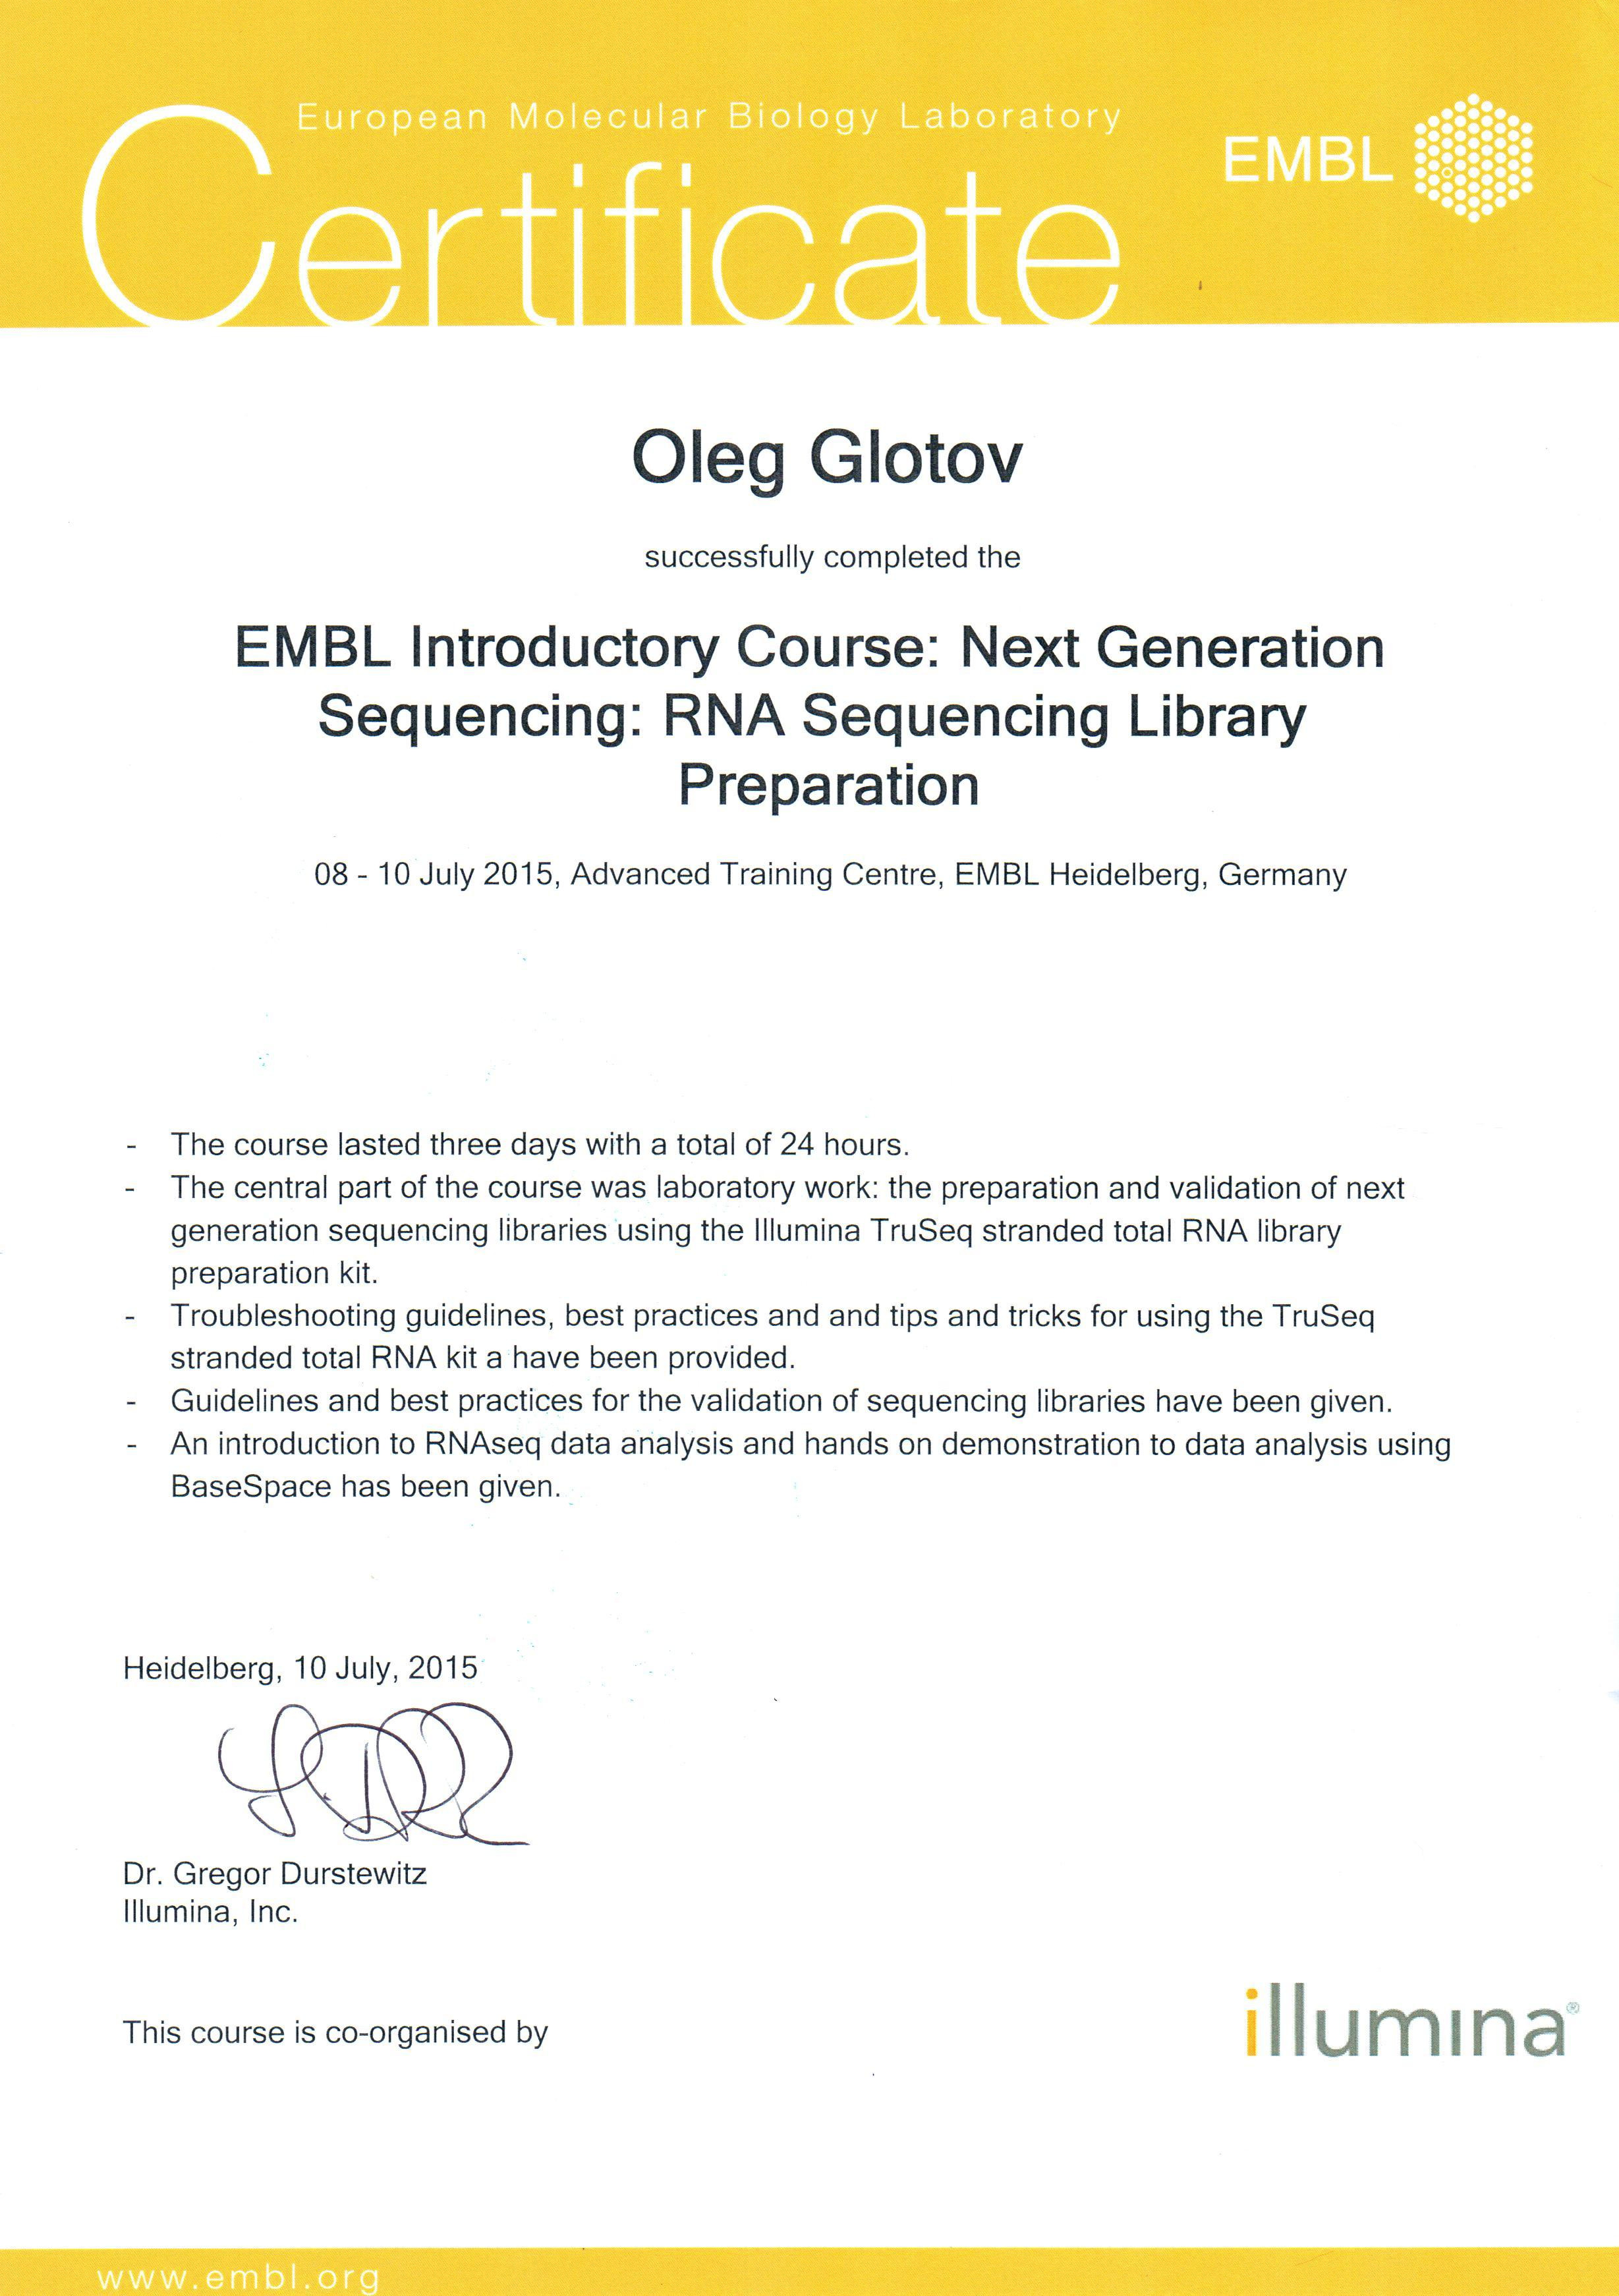 Диплом EMBL Introductory Course